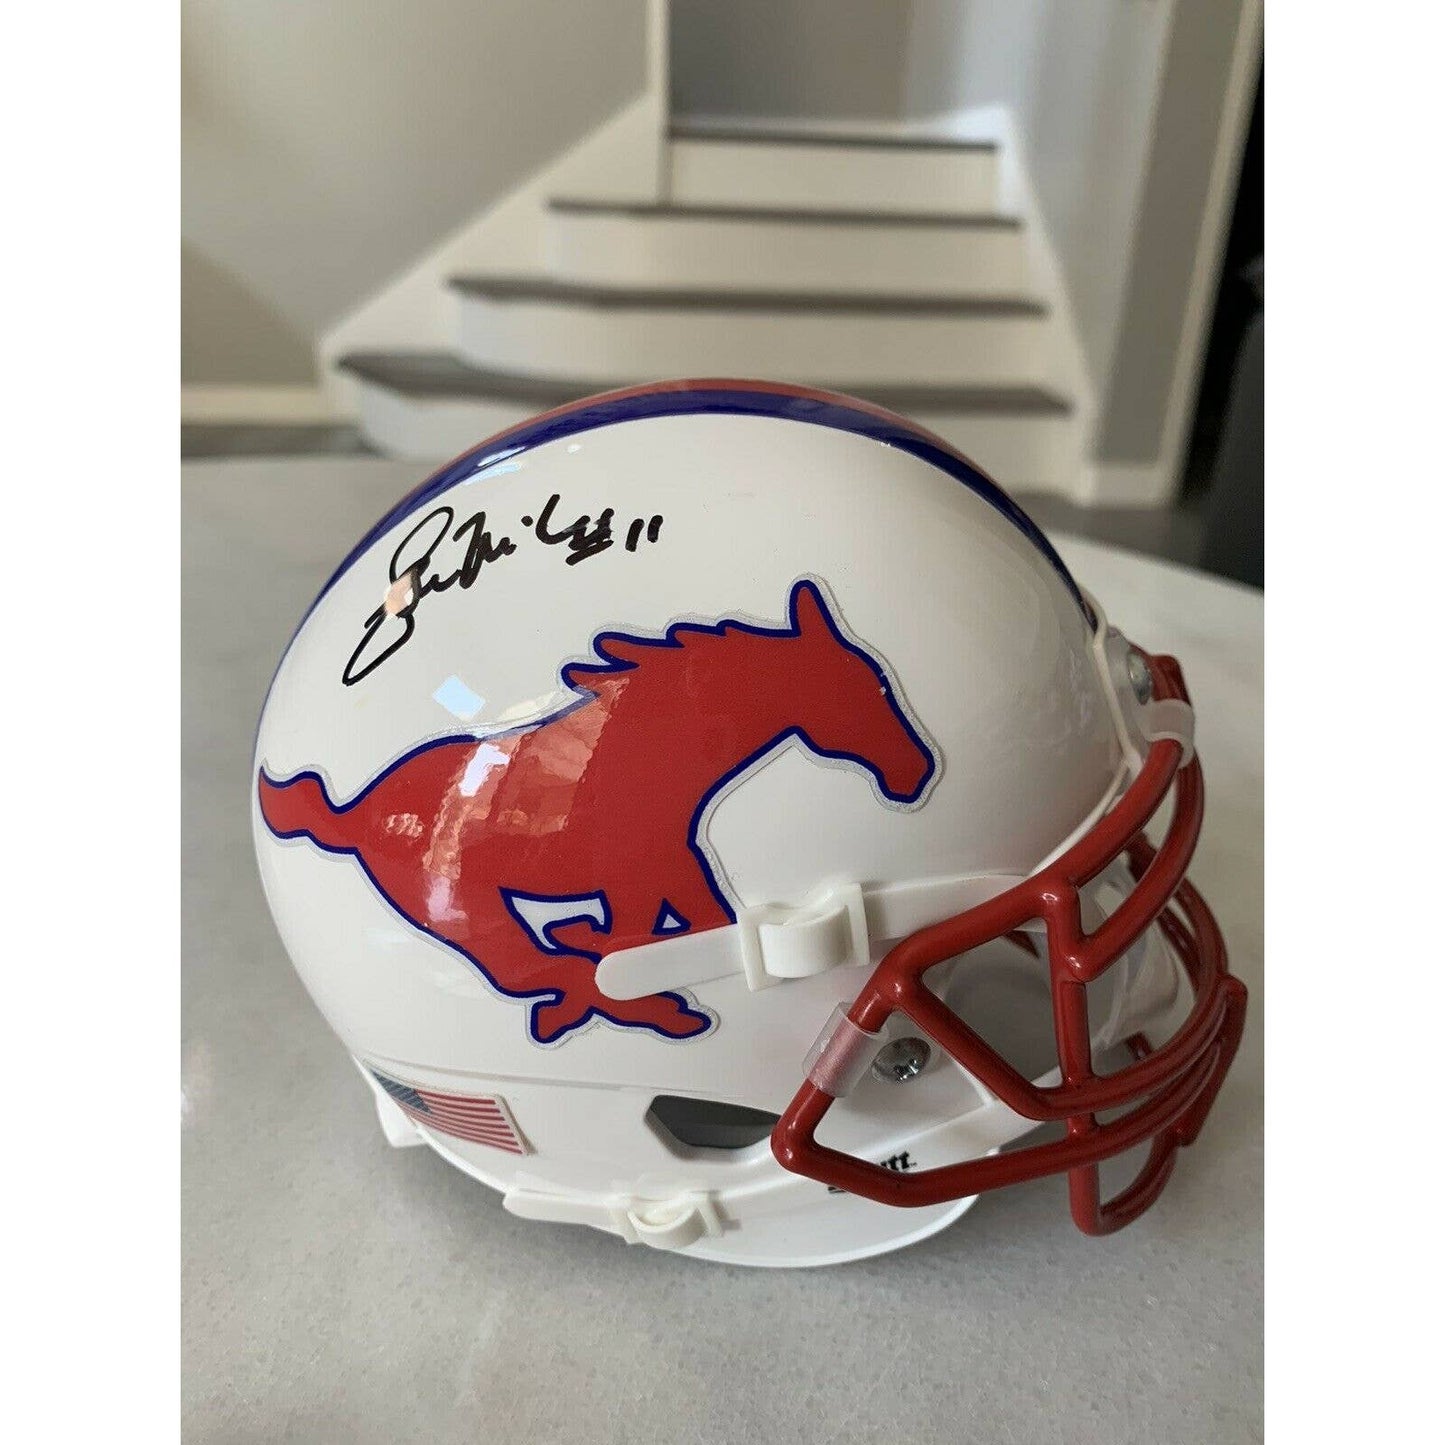 Lance Mcilhenny Autographed/Signed Mini Helmet JSA COA SMU Mustangs - TreasuresEvolved